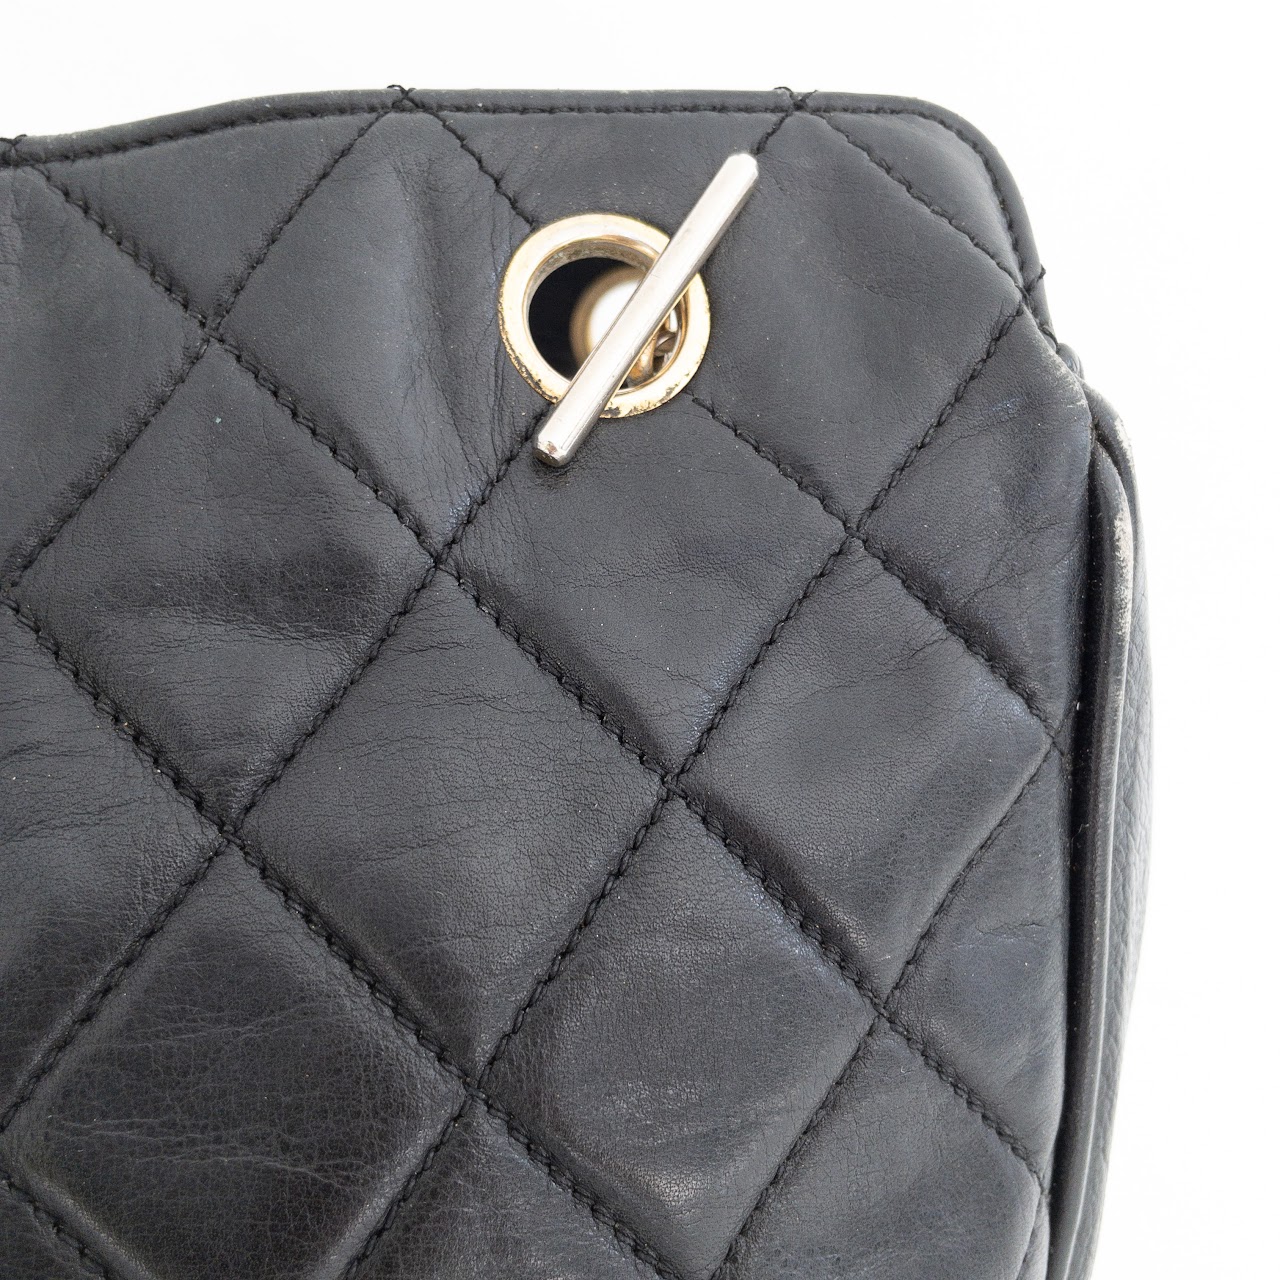 black patent leather chanel bag vintage